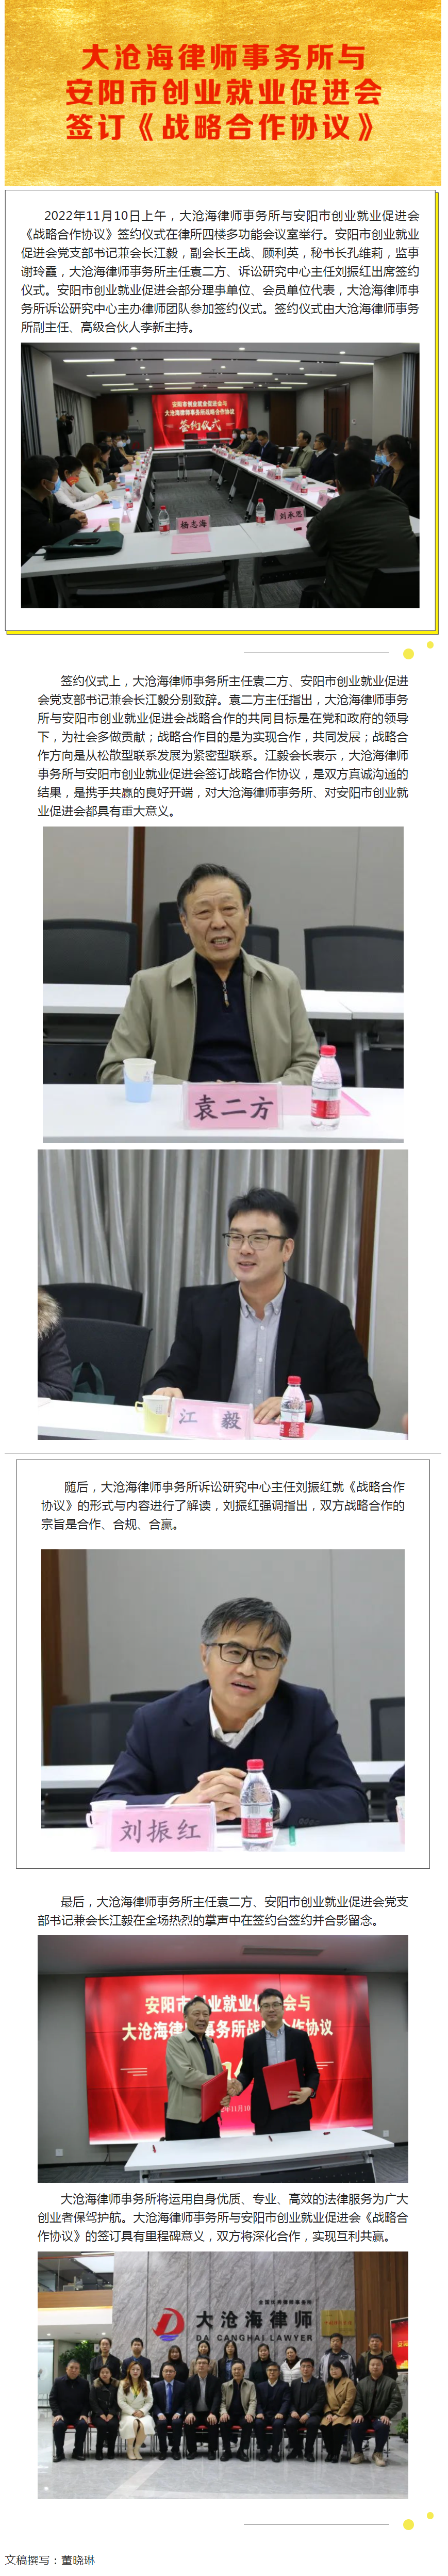 大沧海律师事务所与安阳市创业就业促进会签订《战略合作协议》